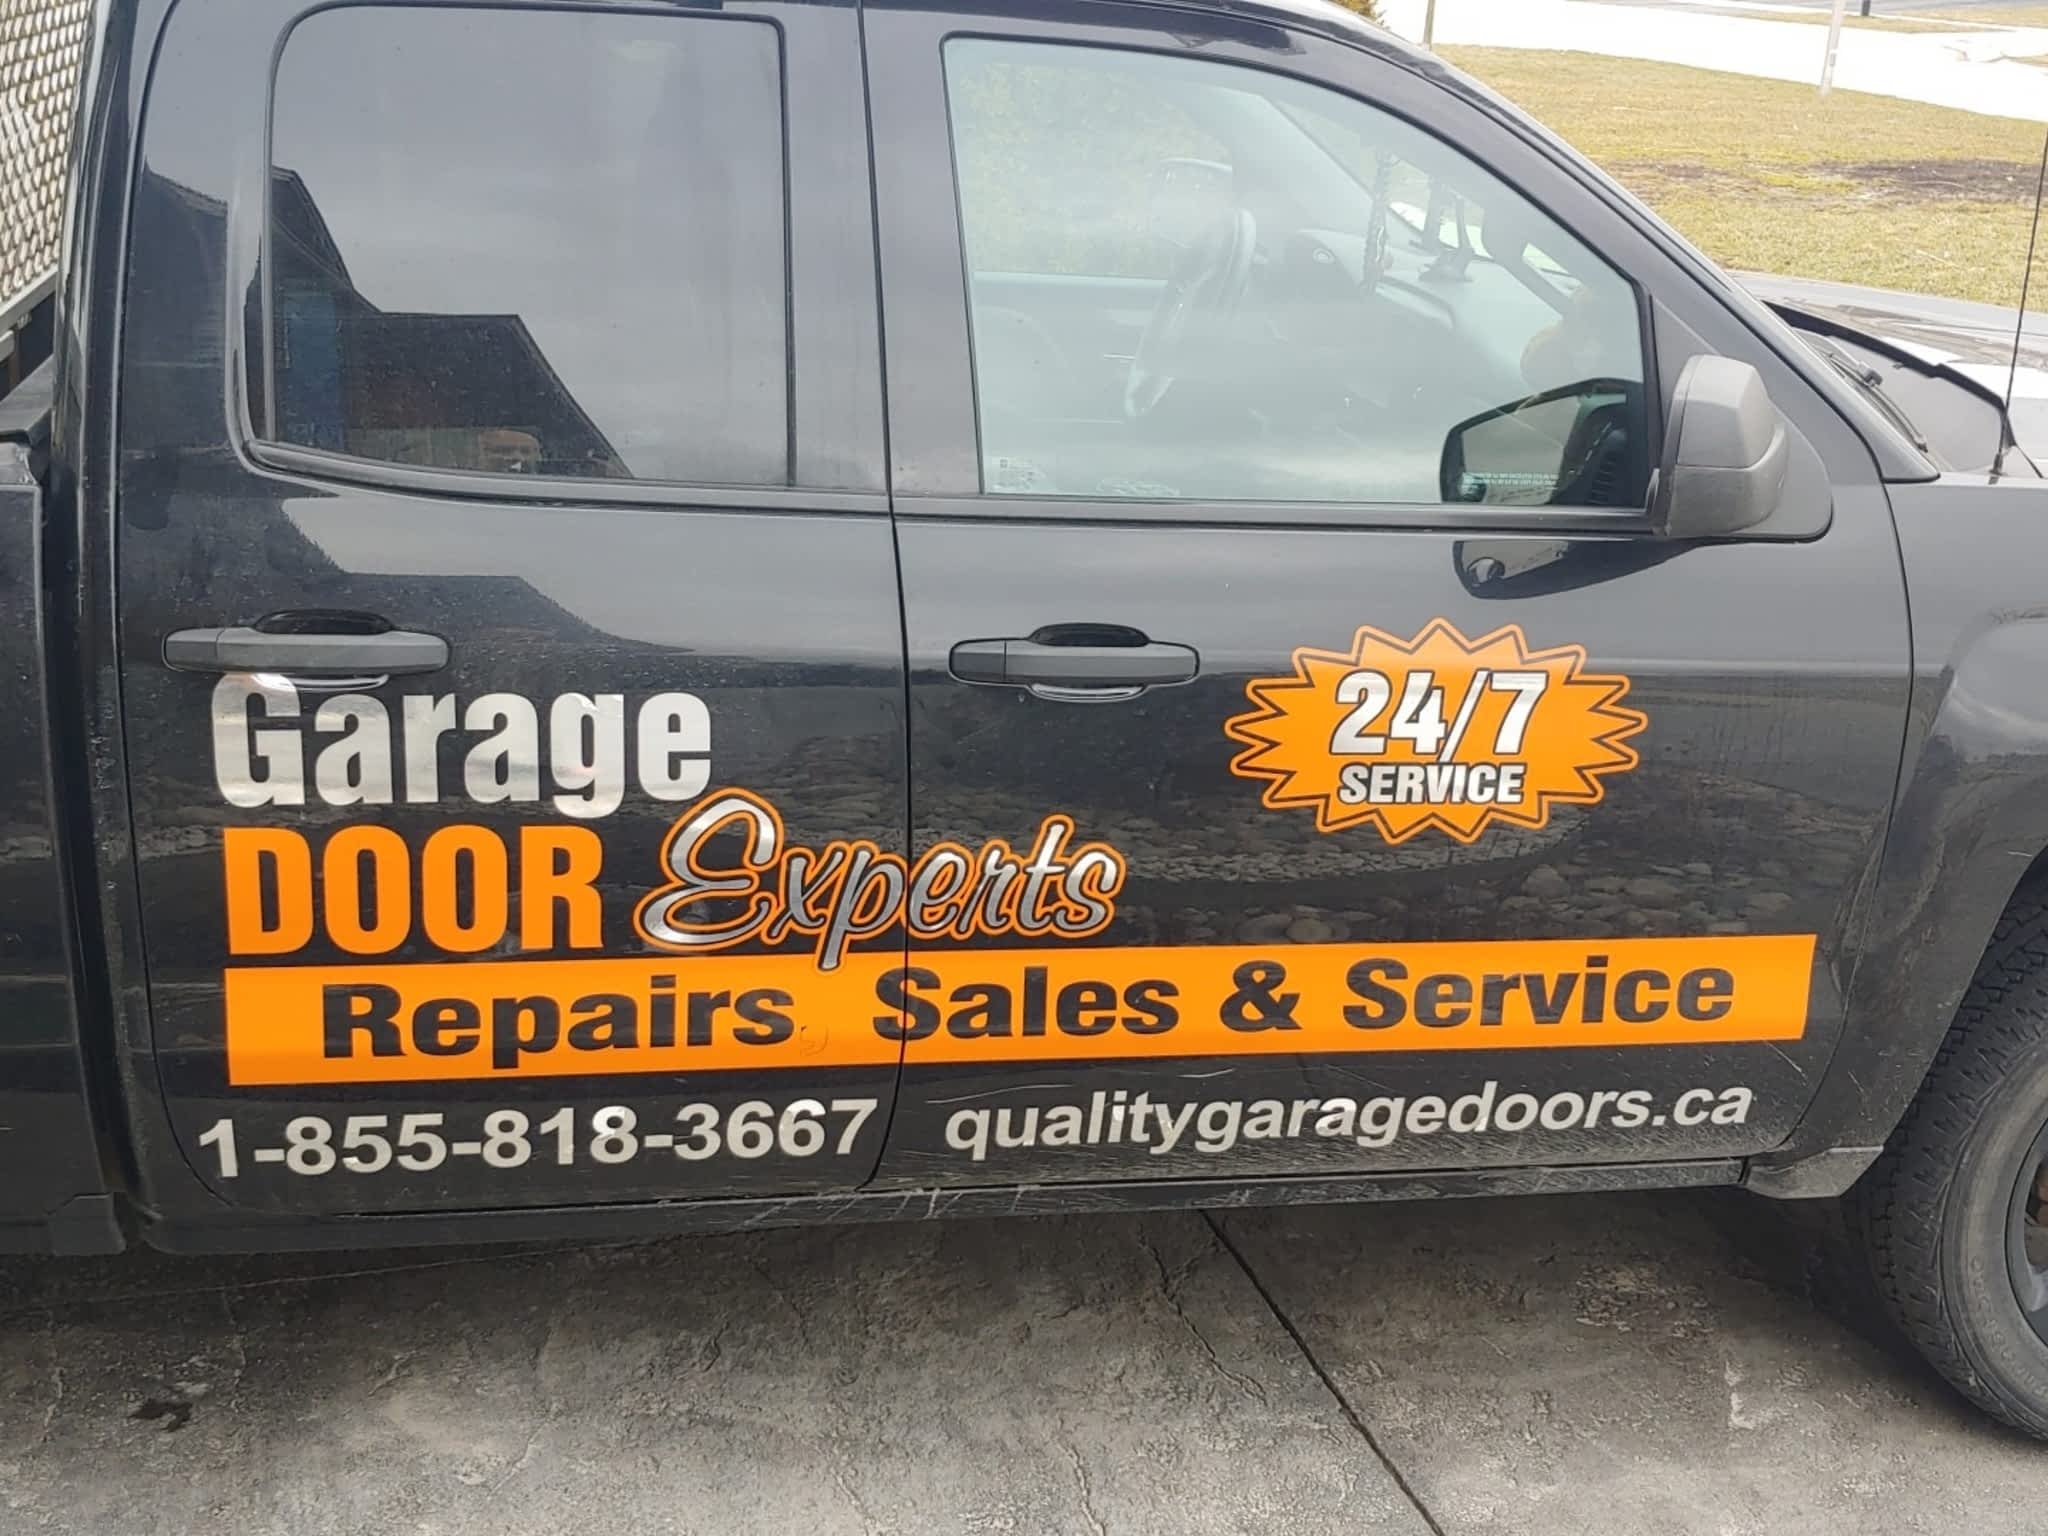 photo Garage Door Experts 24/7 Services